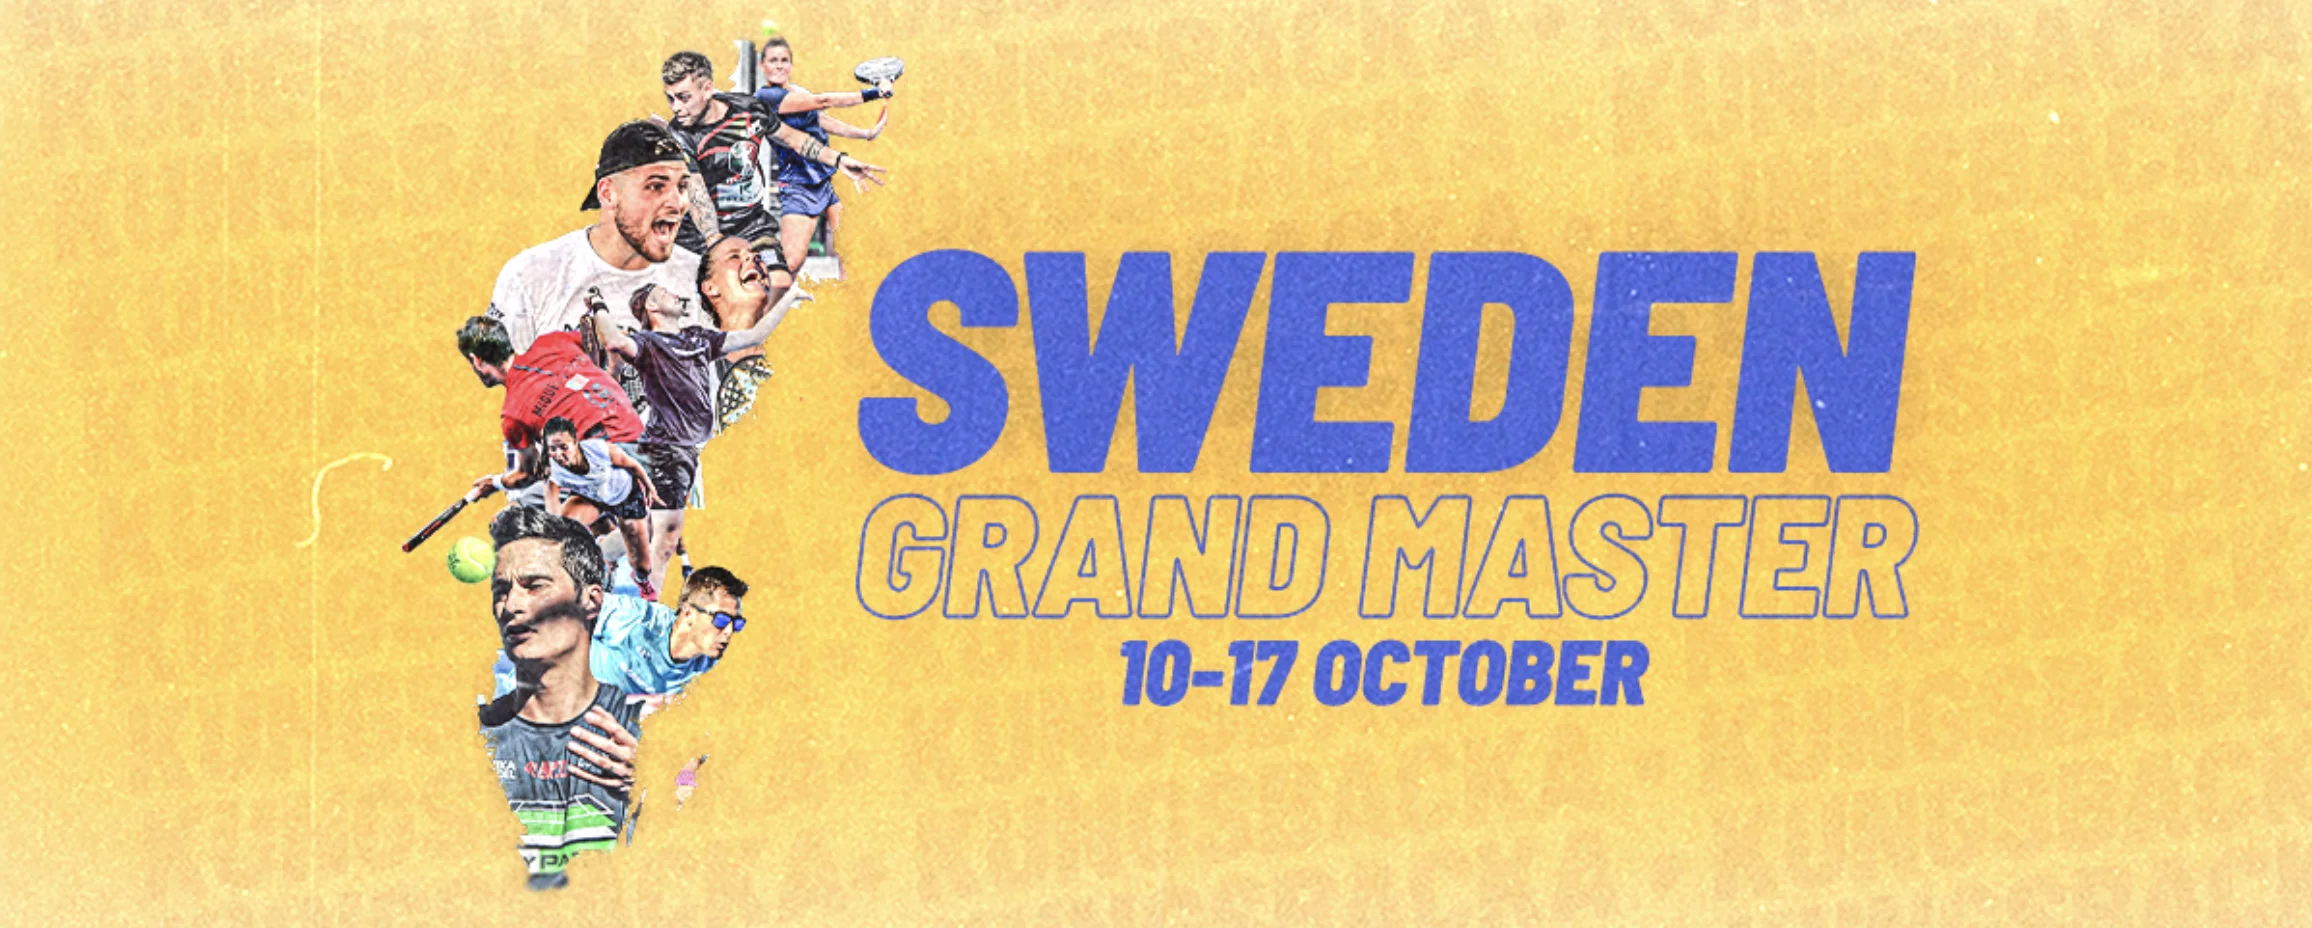 APT Padel Tour: Wielki Mistrz Szwecji zbliża się!